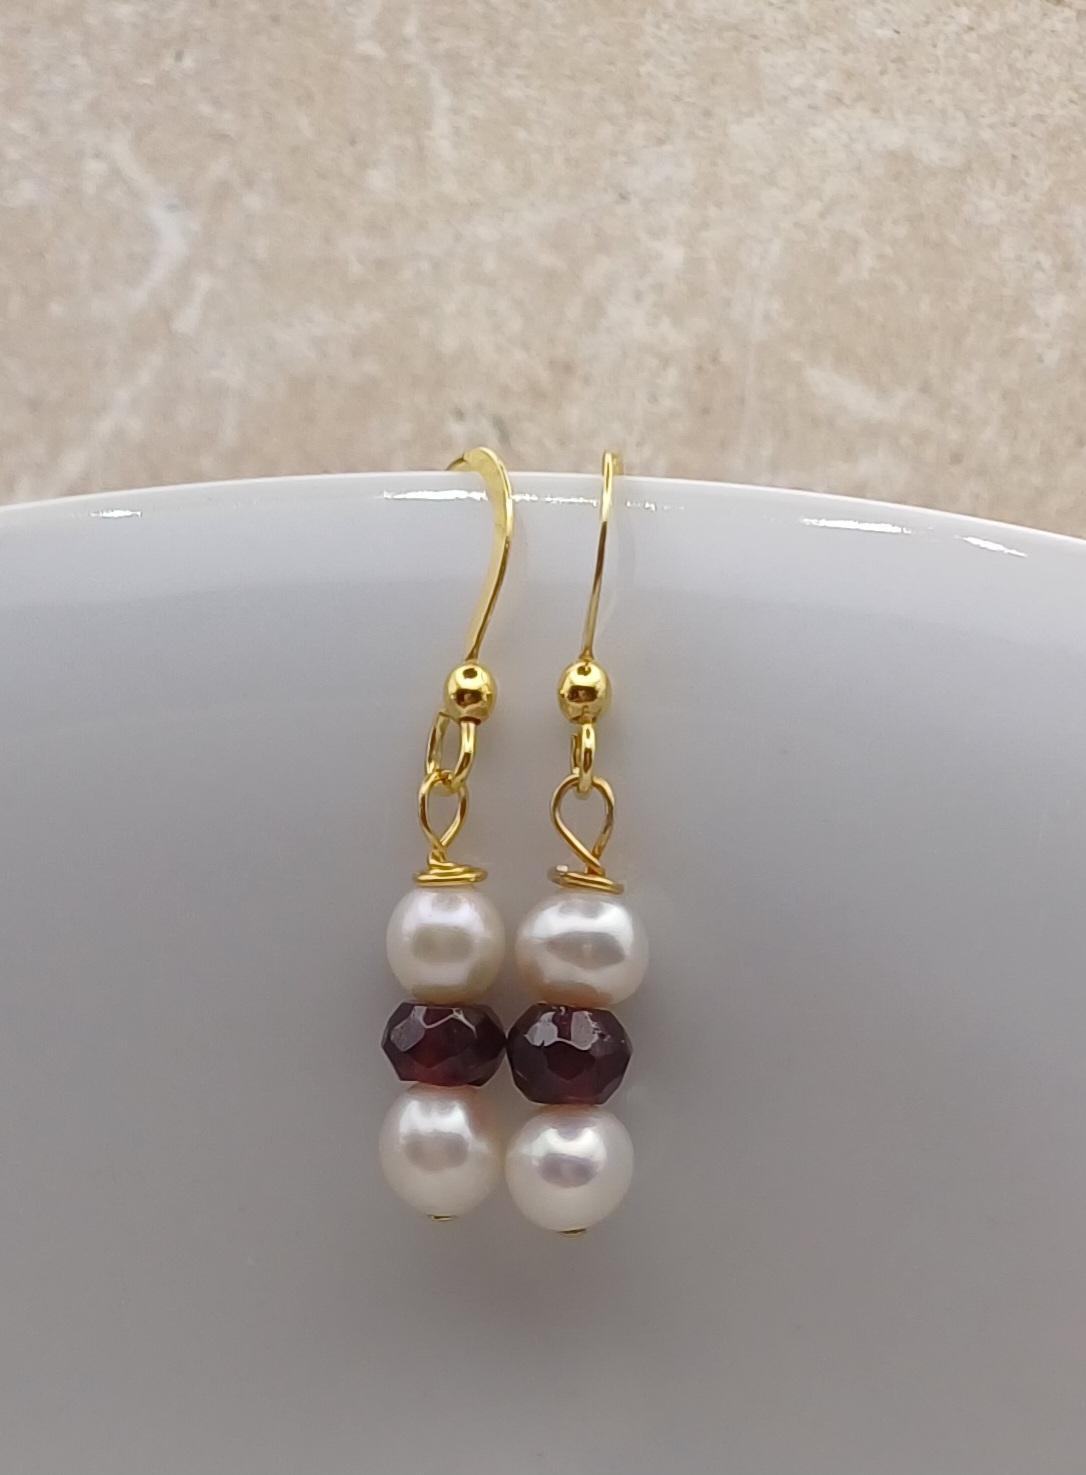 EARRINGS - 14k Gold Vermeil Pearl and Garnet Earrings